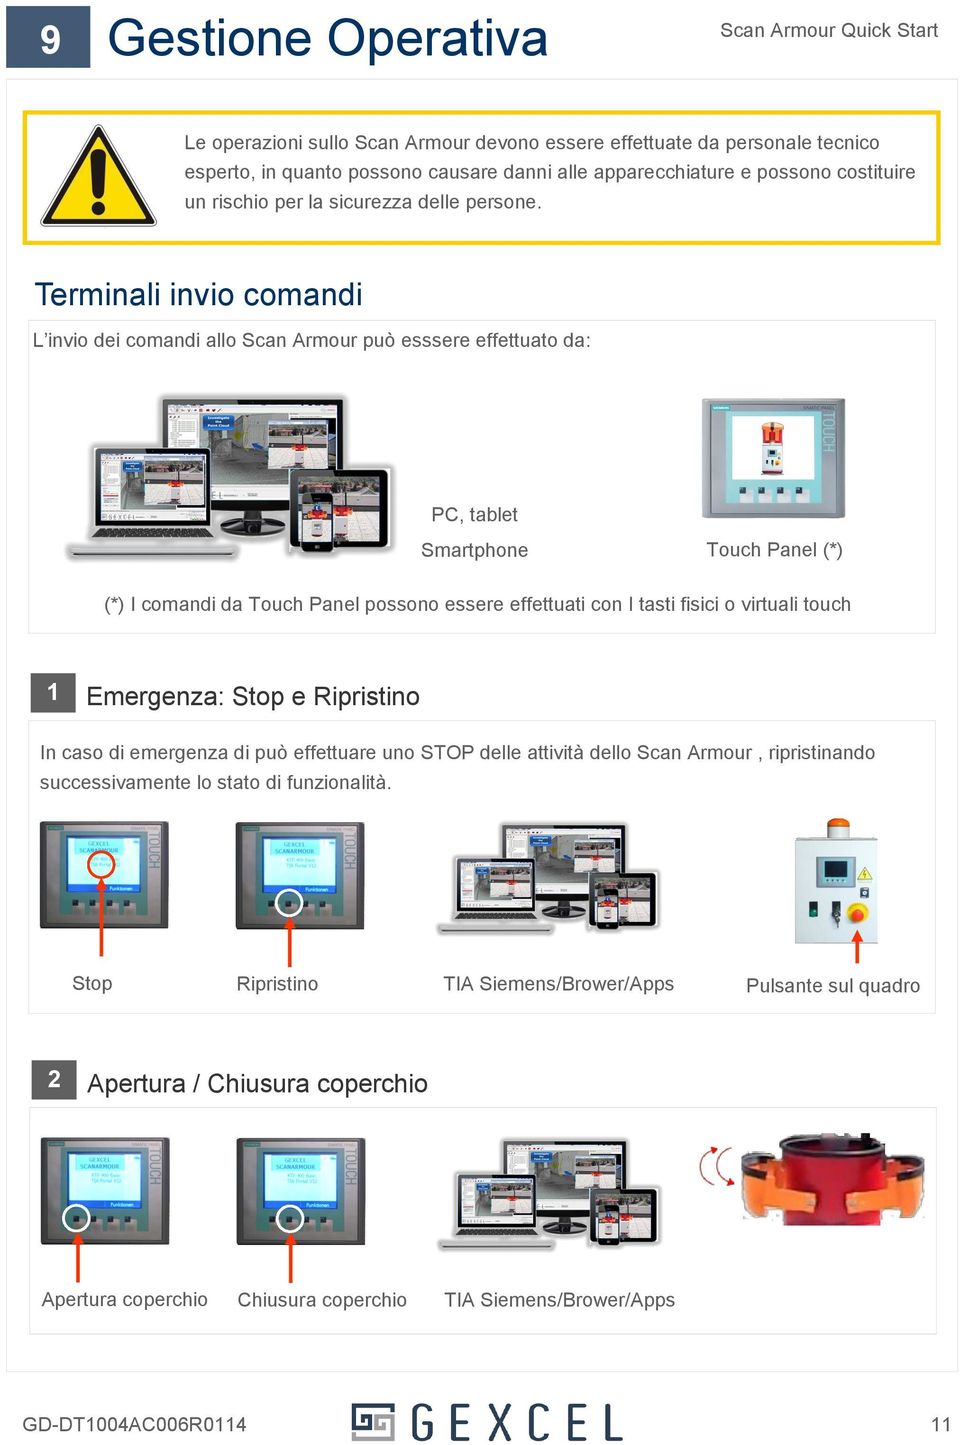 Terminali invio comandi L invio dei comandi allo Scan Armour può esssere effettuato da: PC, tablet Smartphone Touch Panel (*) (*) I comandi da Touch Panel possono essere effettuati con I